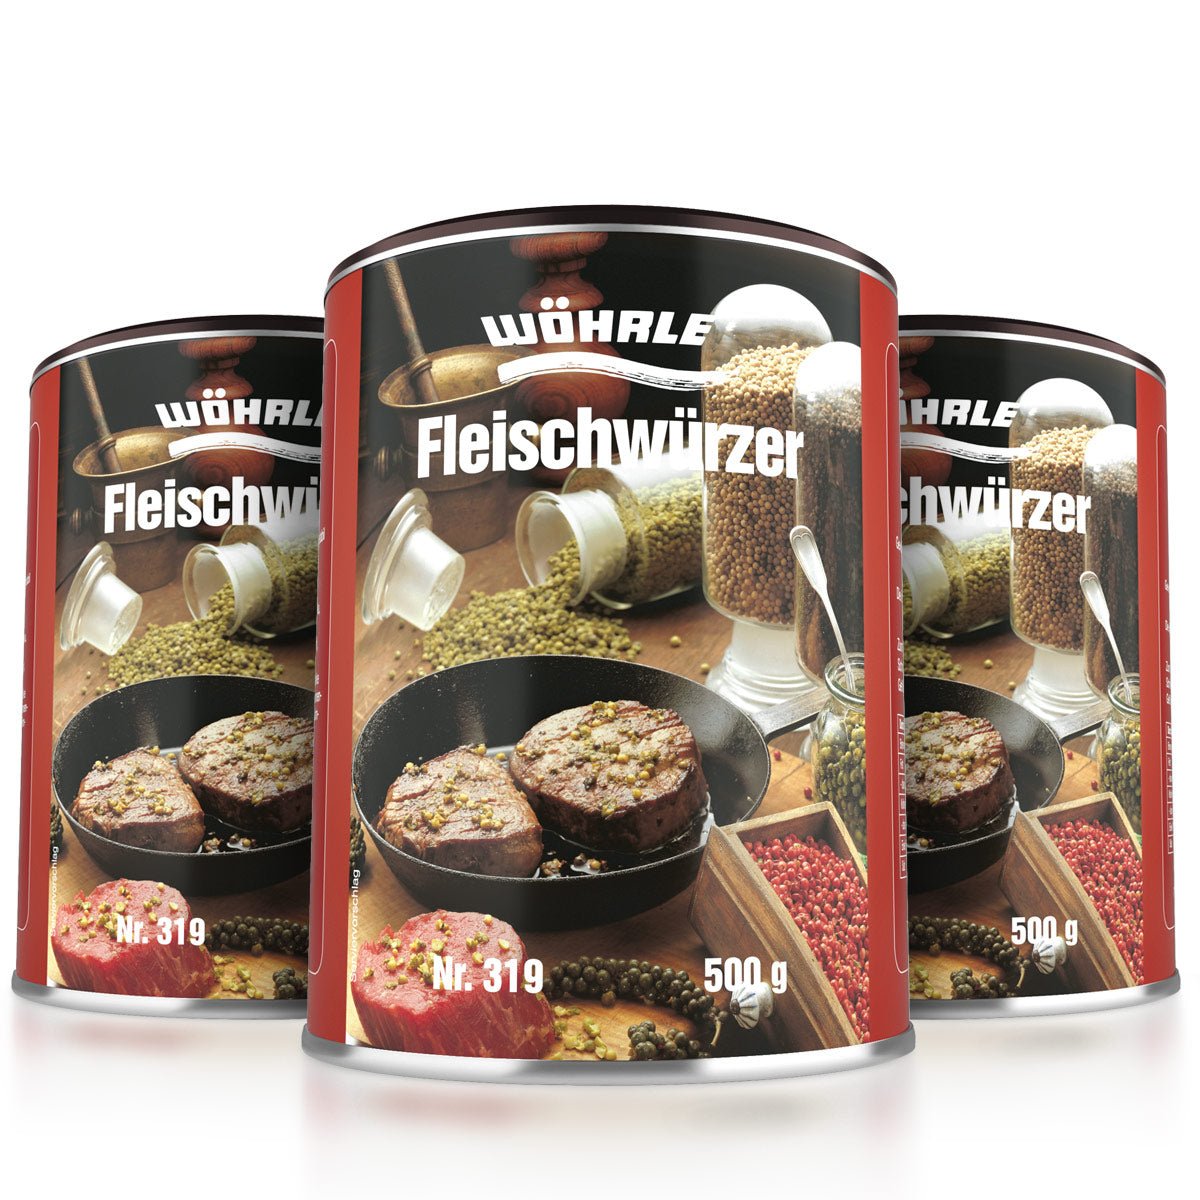 Fleischwürzer - Wöhrle - S' Beschde für dahoim!